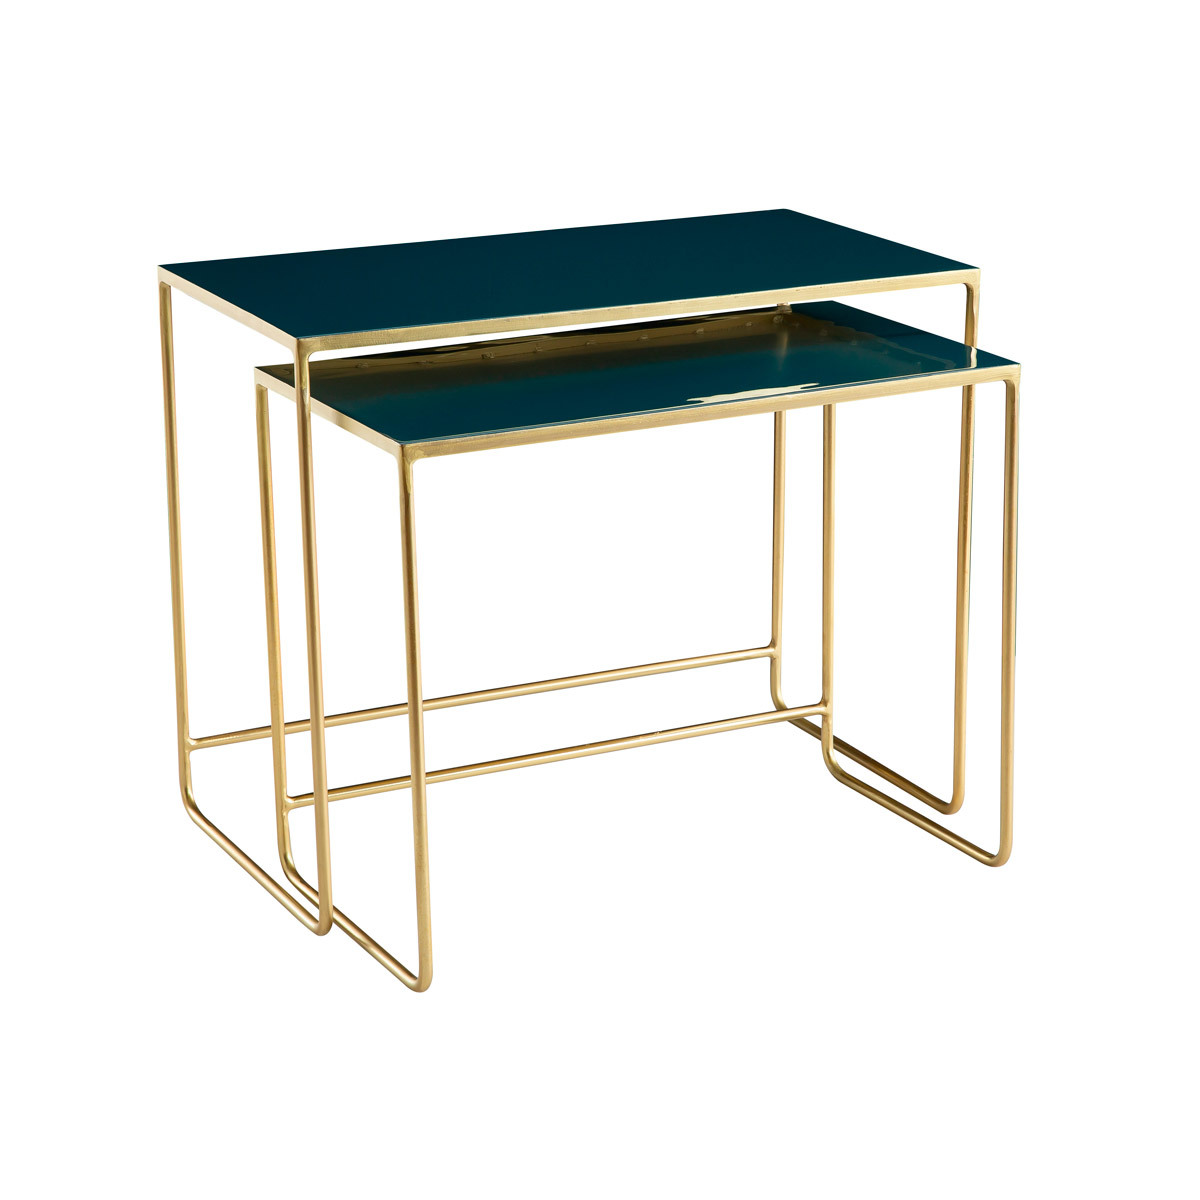 Tables basses gigognes rectangulaires design bleu pétrole et métal doré (lot de 2) WESS vue1